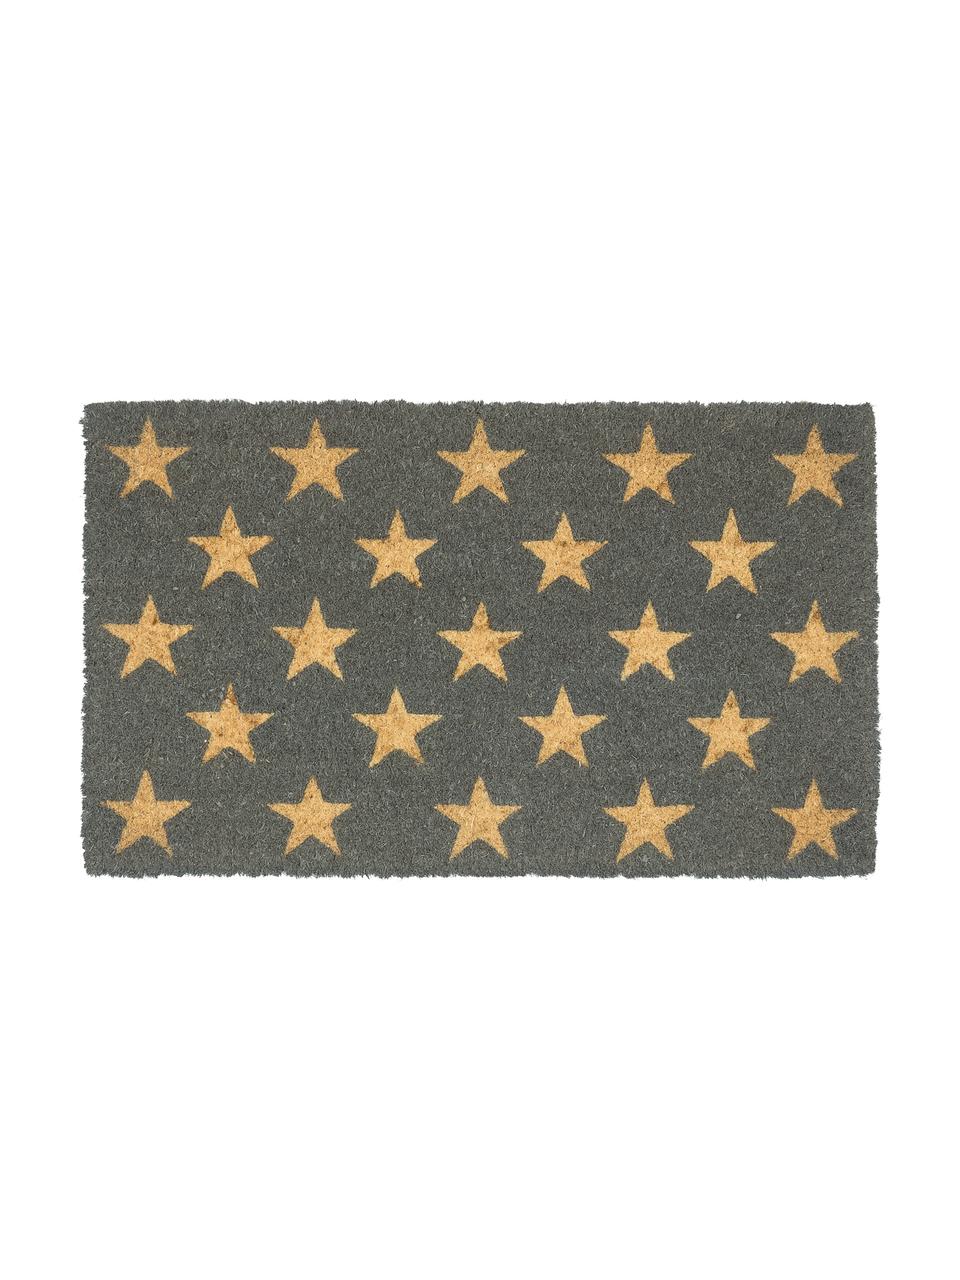 Fußmatte Fresh Stars, Oberseite: 100 % Kokosfaser, Unterseite: Kunststoff, Beige, Grau, 46 x 76 cm